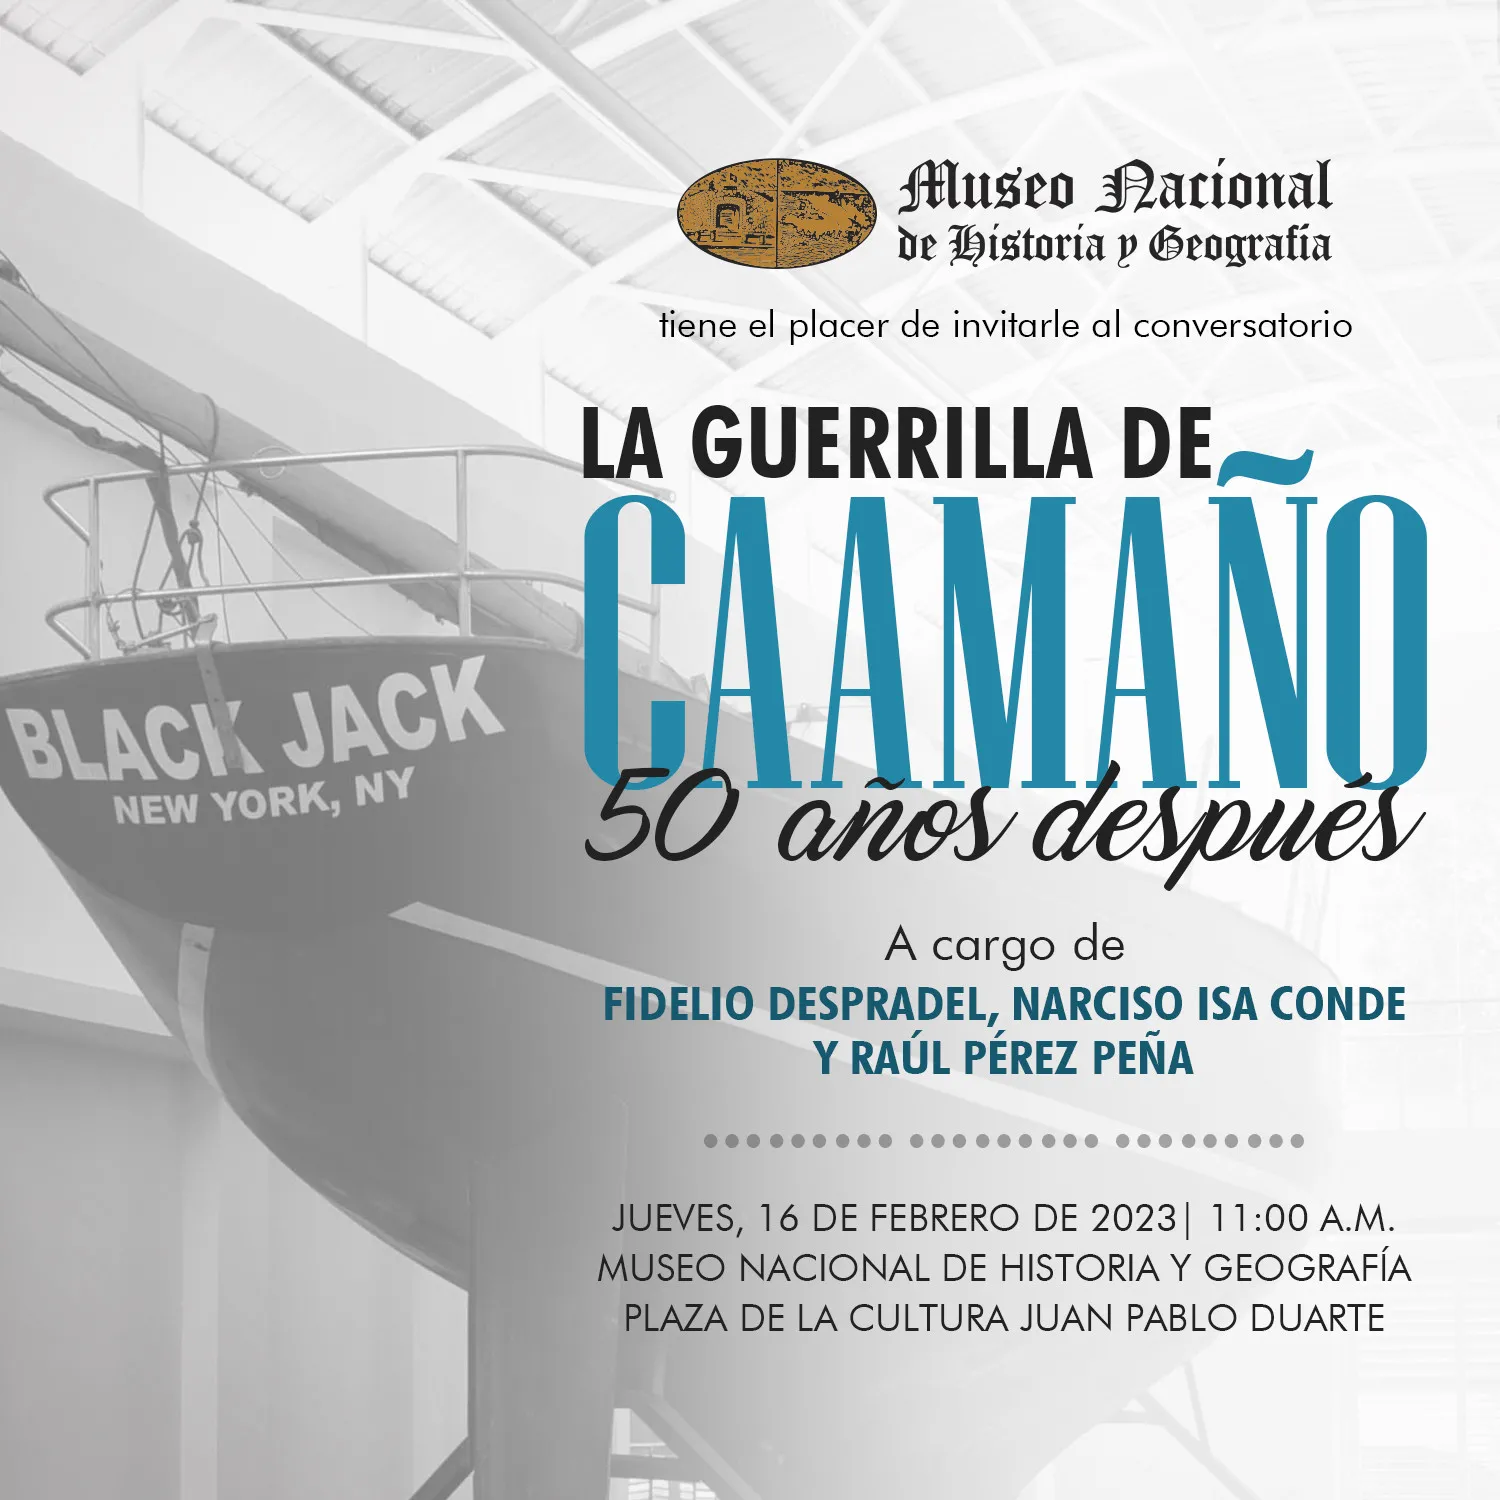 Museo de Historia y Geografía invita a conversatorio sobre guerrilla de Caamaño